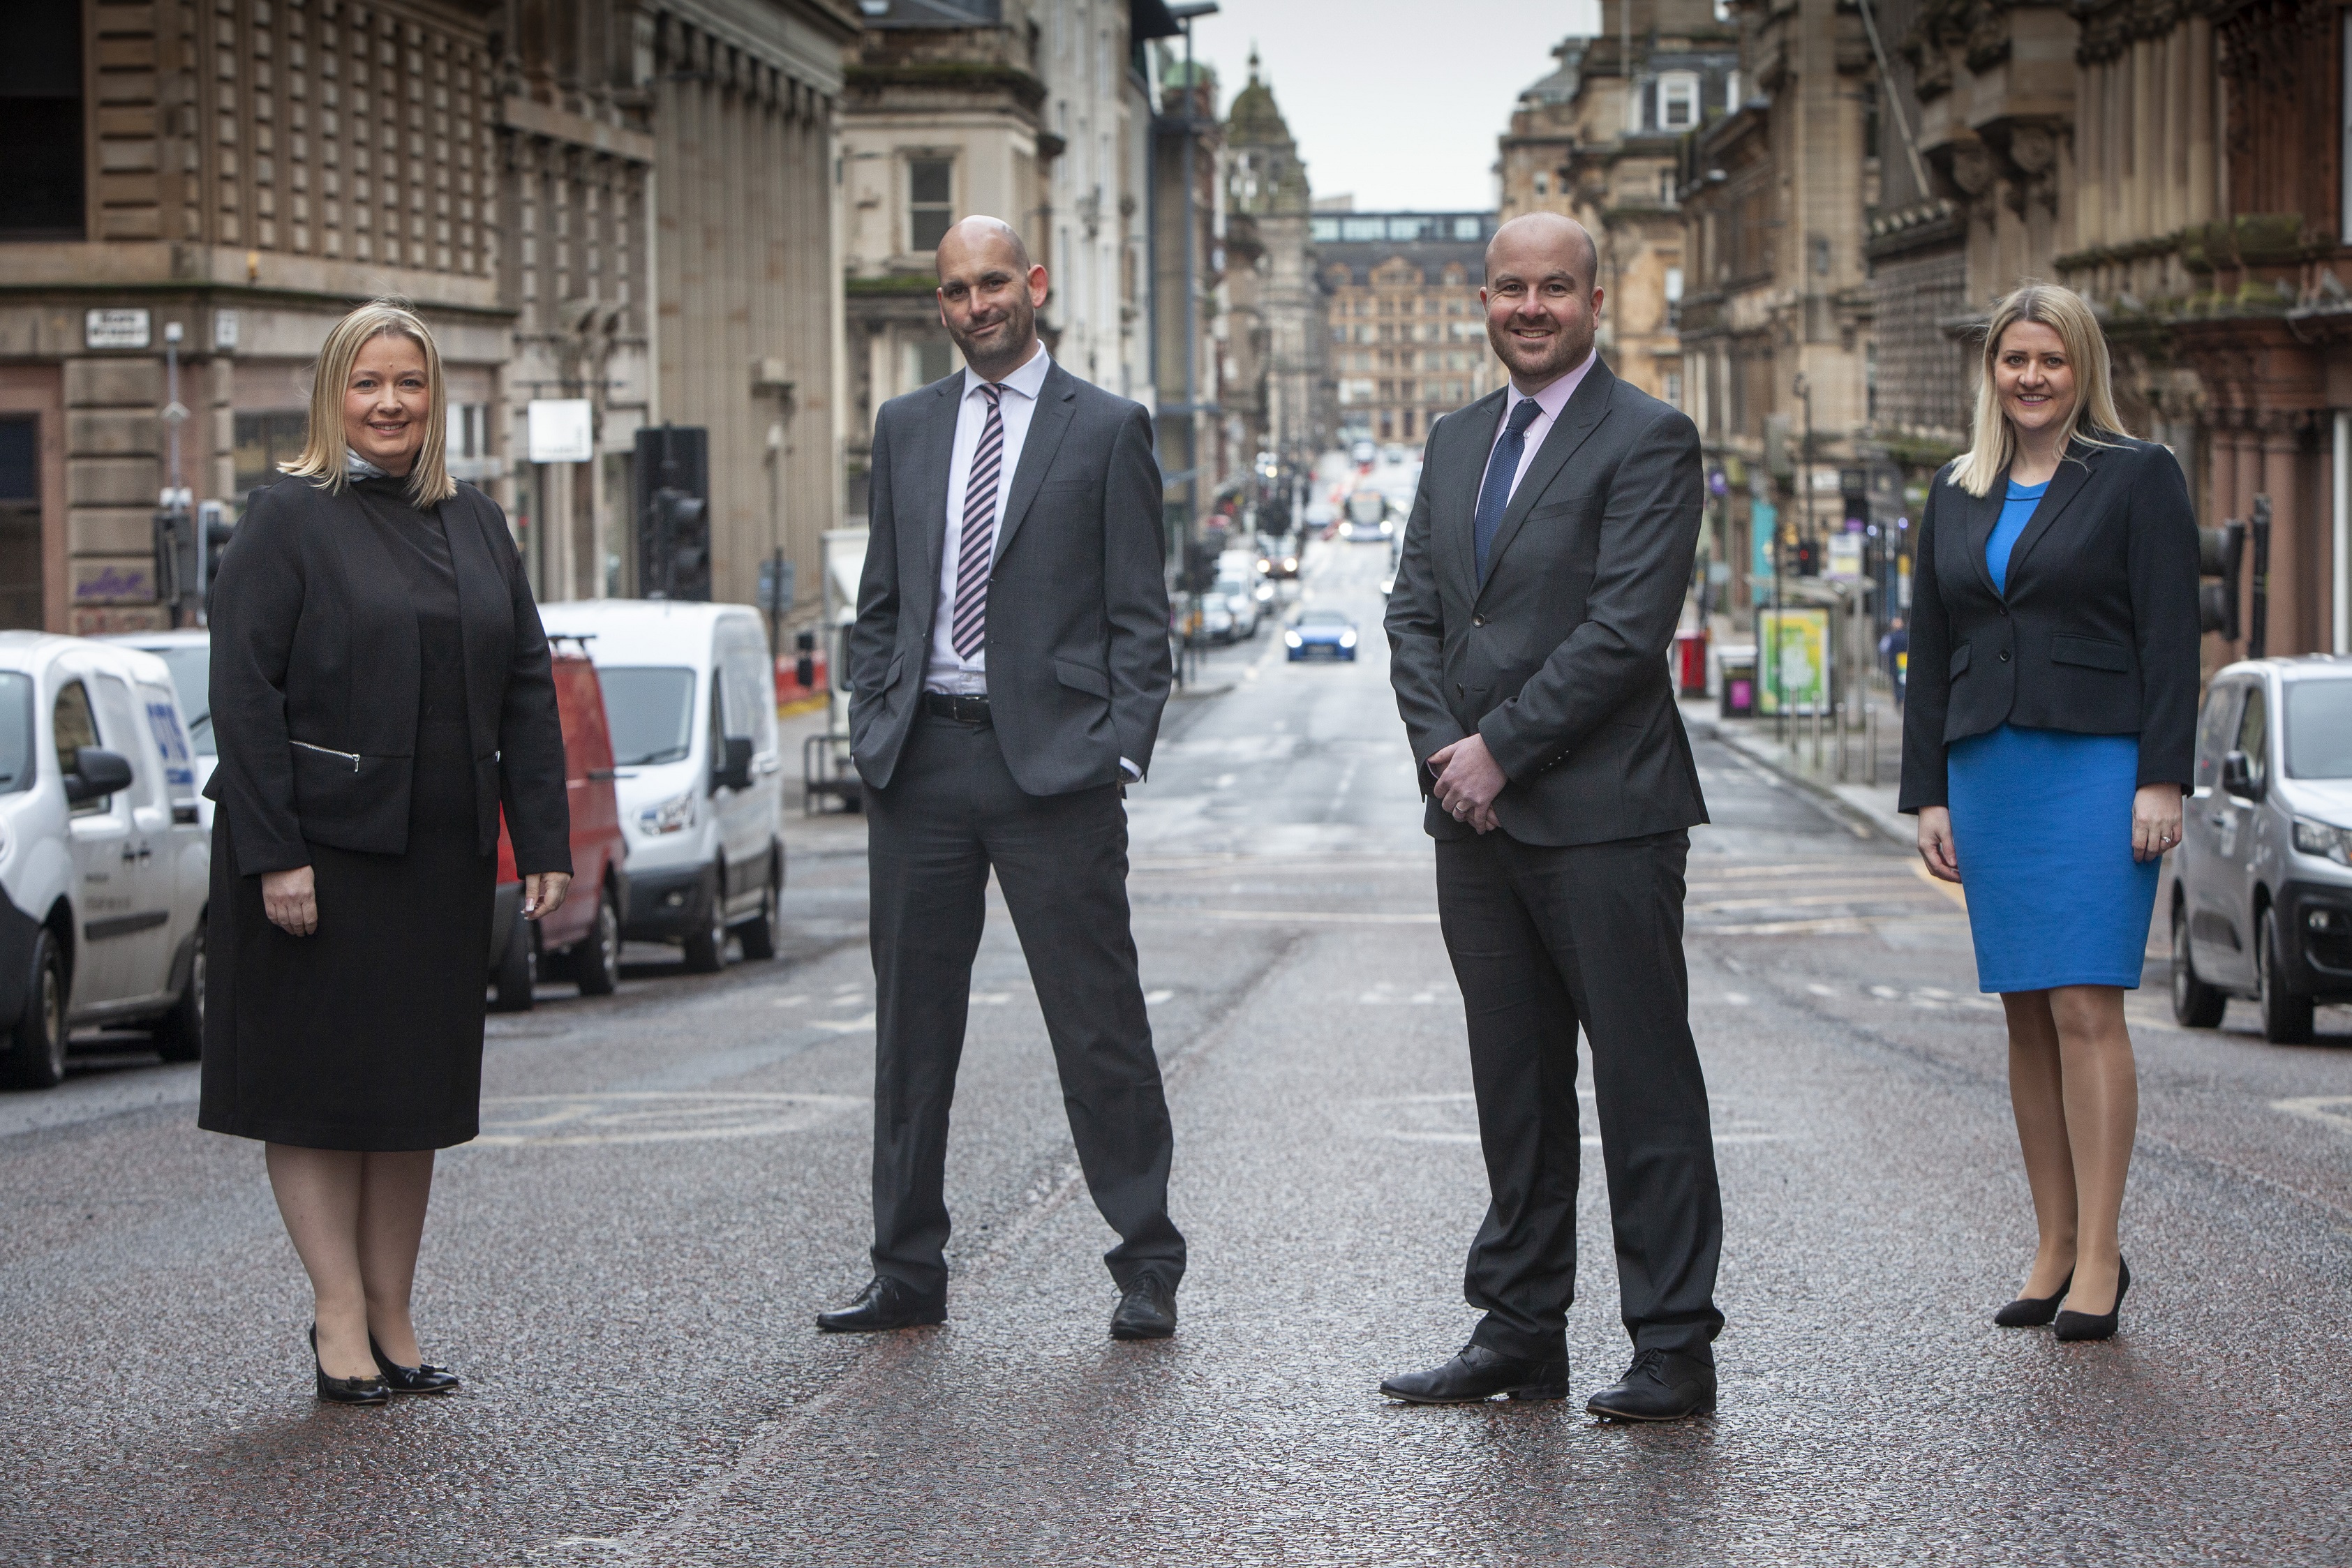 Glasgow lawyers launch new Scottish firm